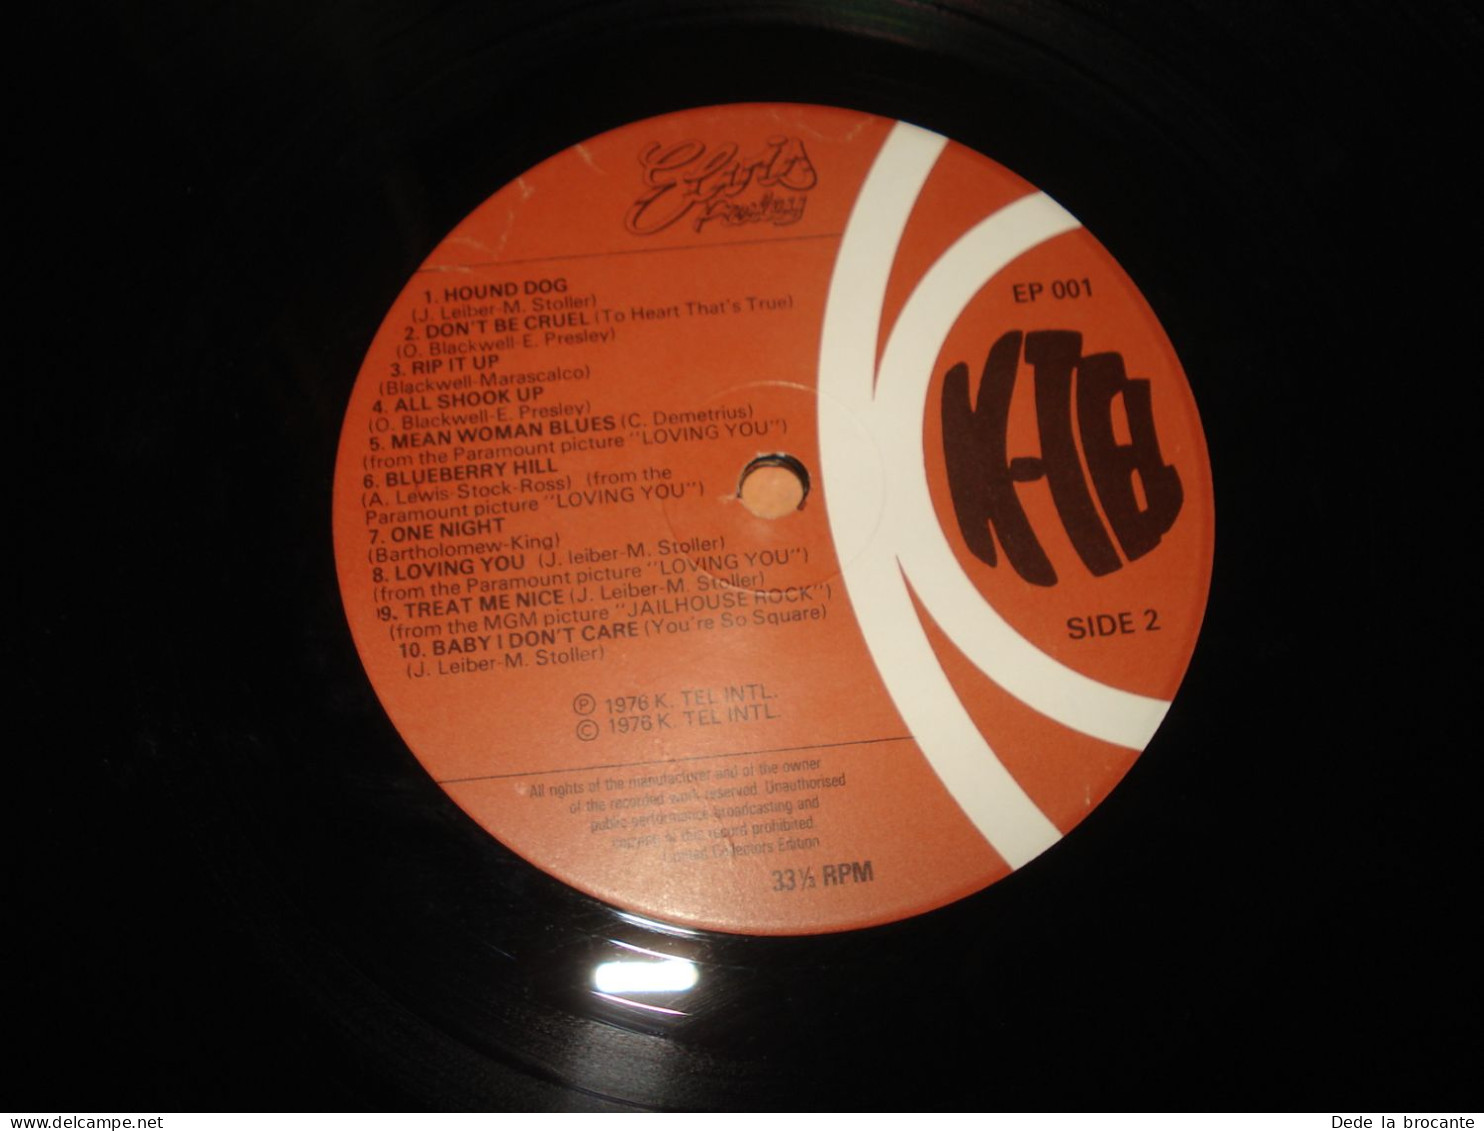 B11 (7)/ Elvis " Le roi du " - Double album - K TEL - EP 001 - Fr 1976 - N.M/N.M